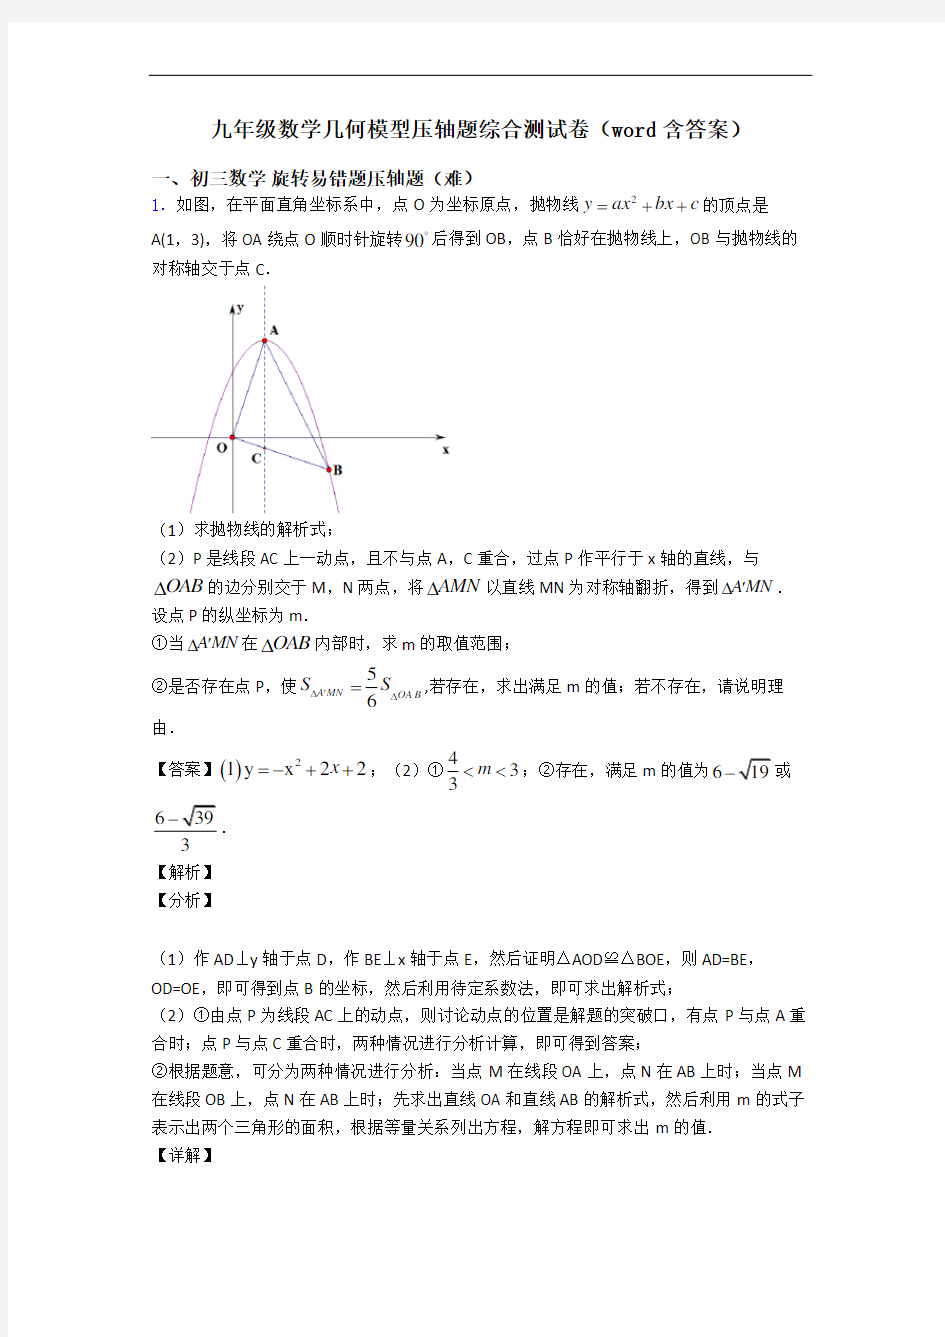 九年级数学几何模型压轴题综合测试卷(word含答案)